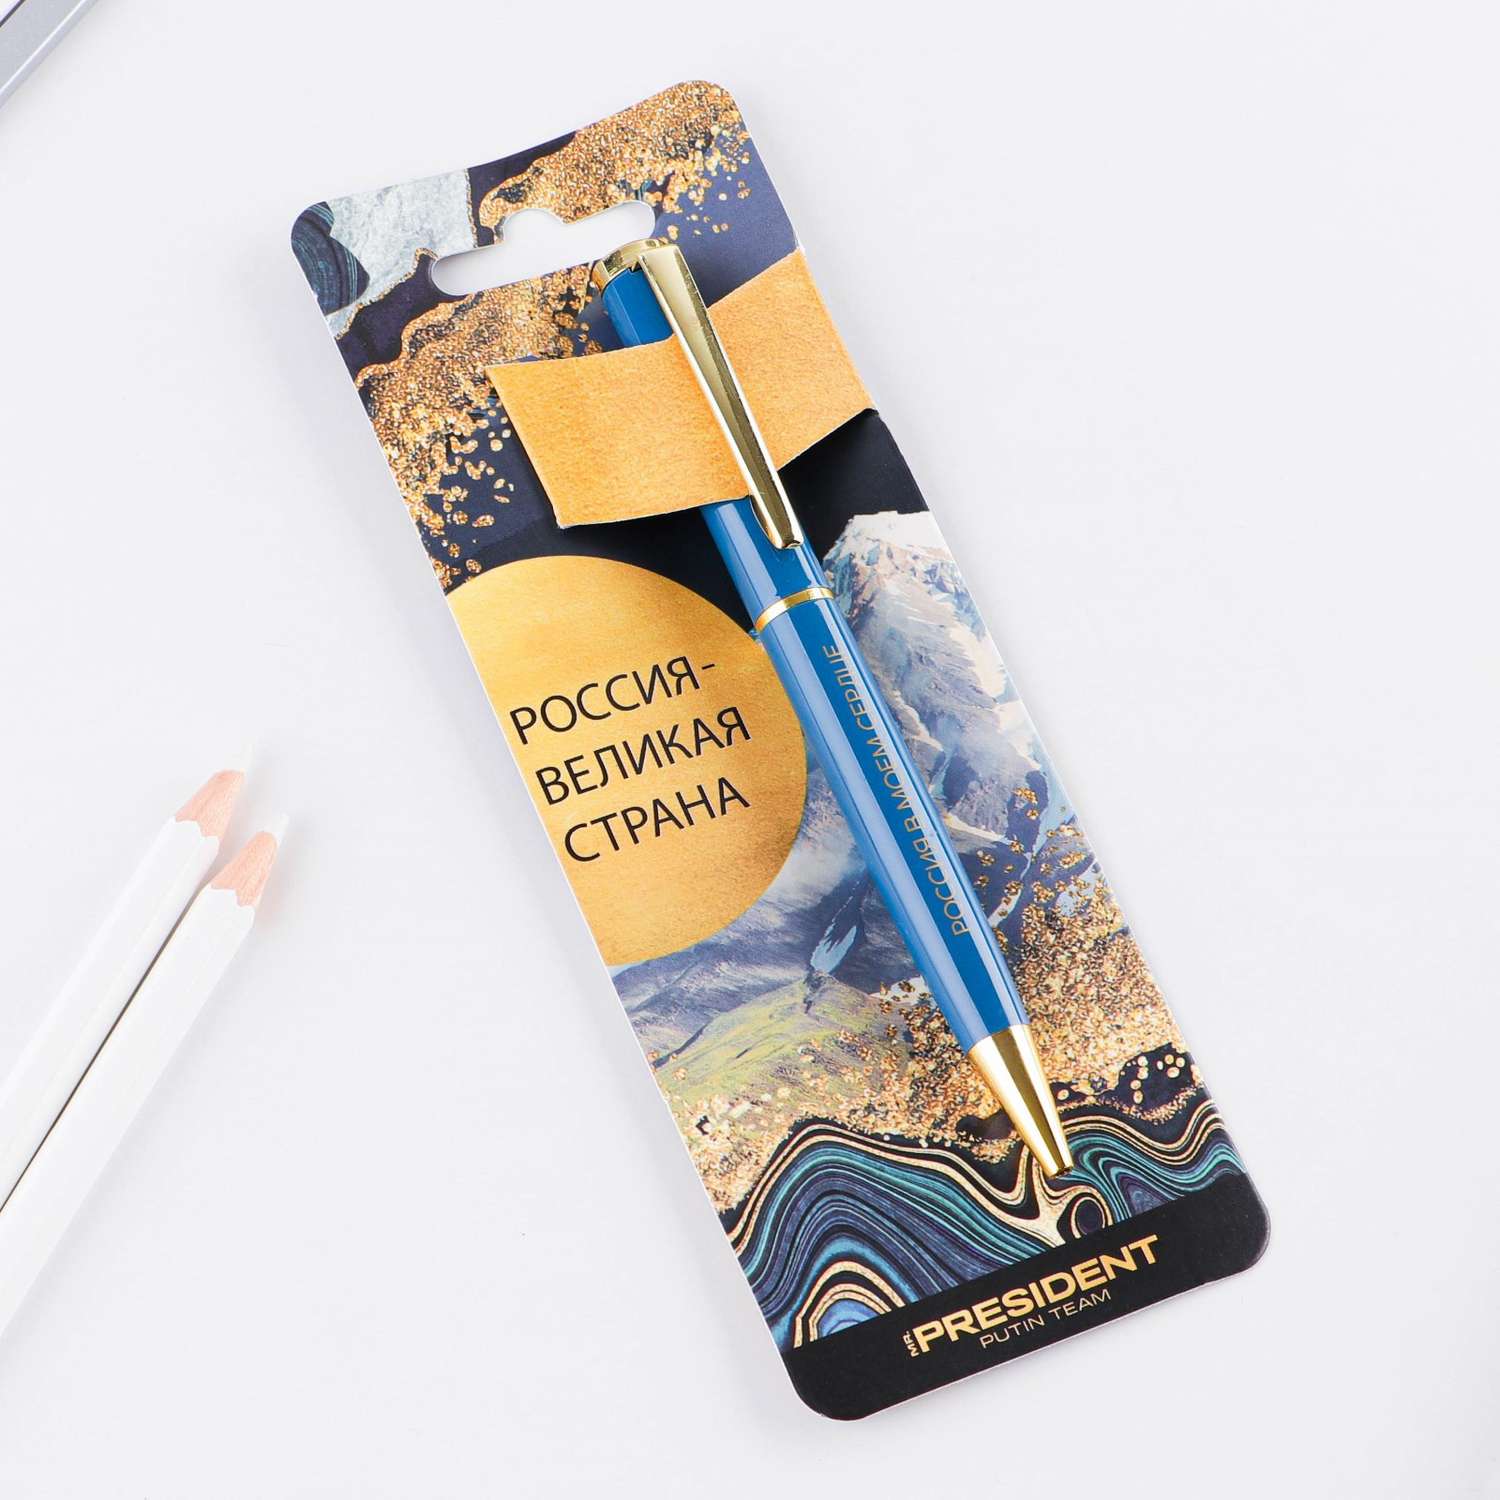 Ручка металлическая Mr. PRESIDENT PUTIN TEAM шариковая Россия великая страна Синяя паста 1 мм - фото 2